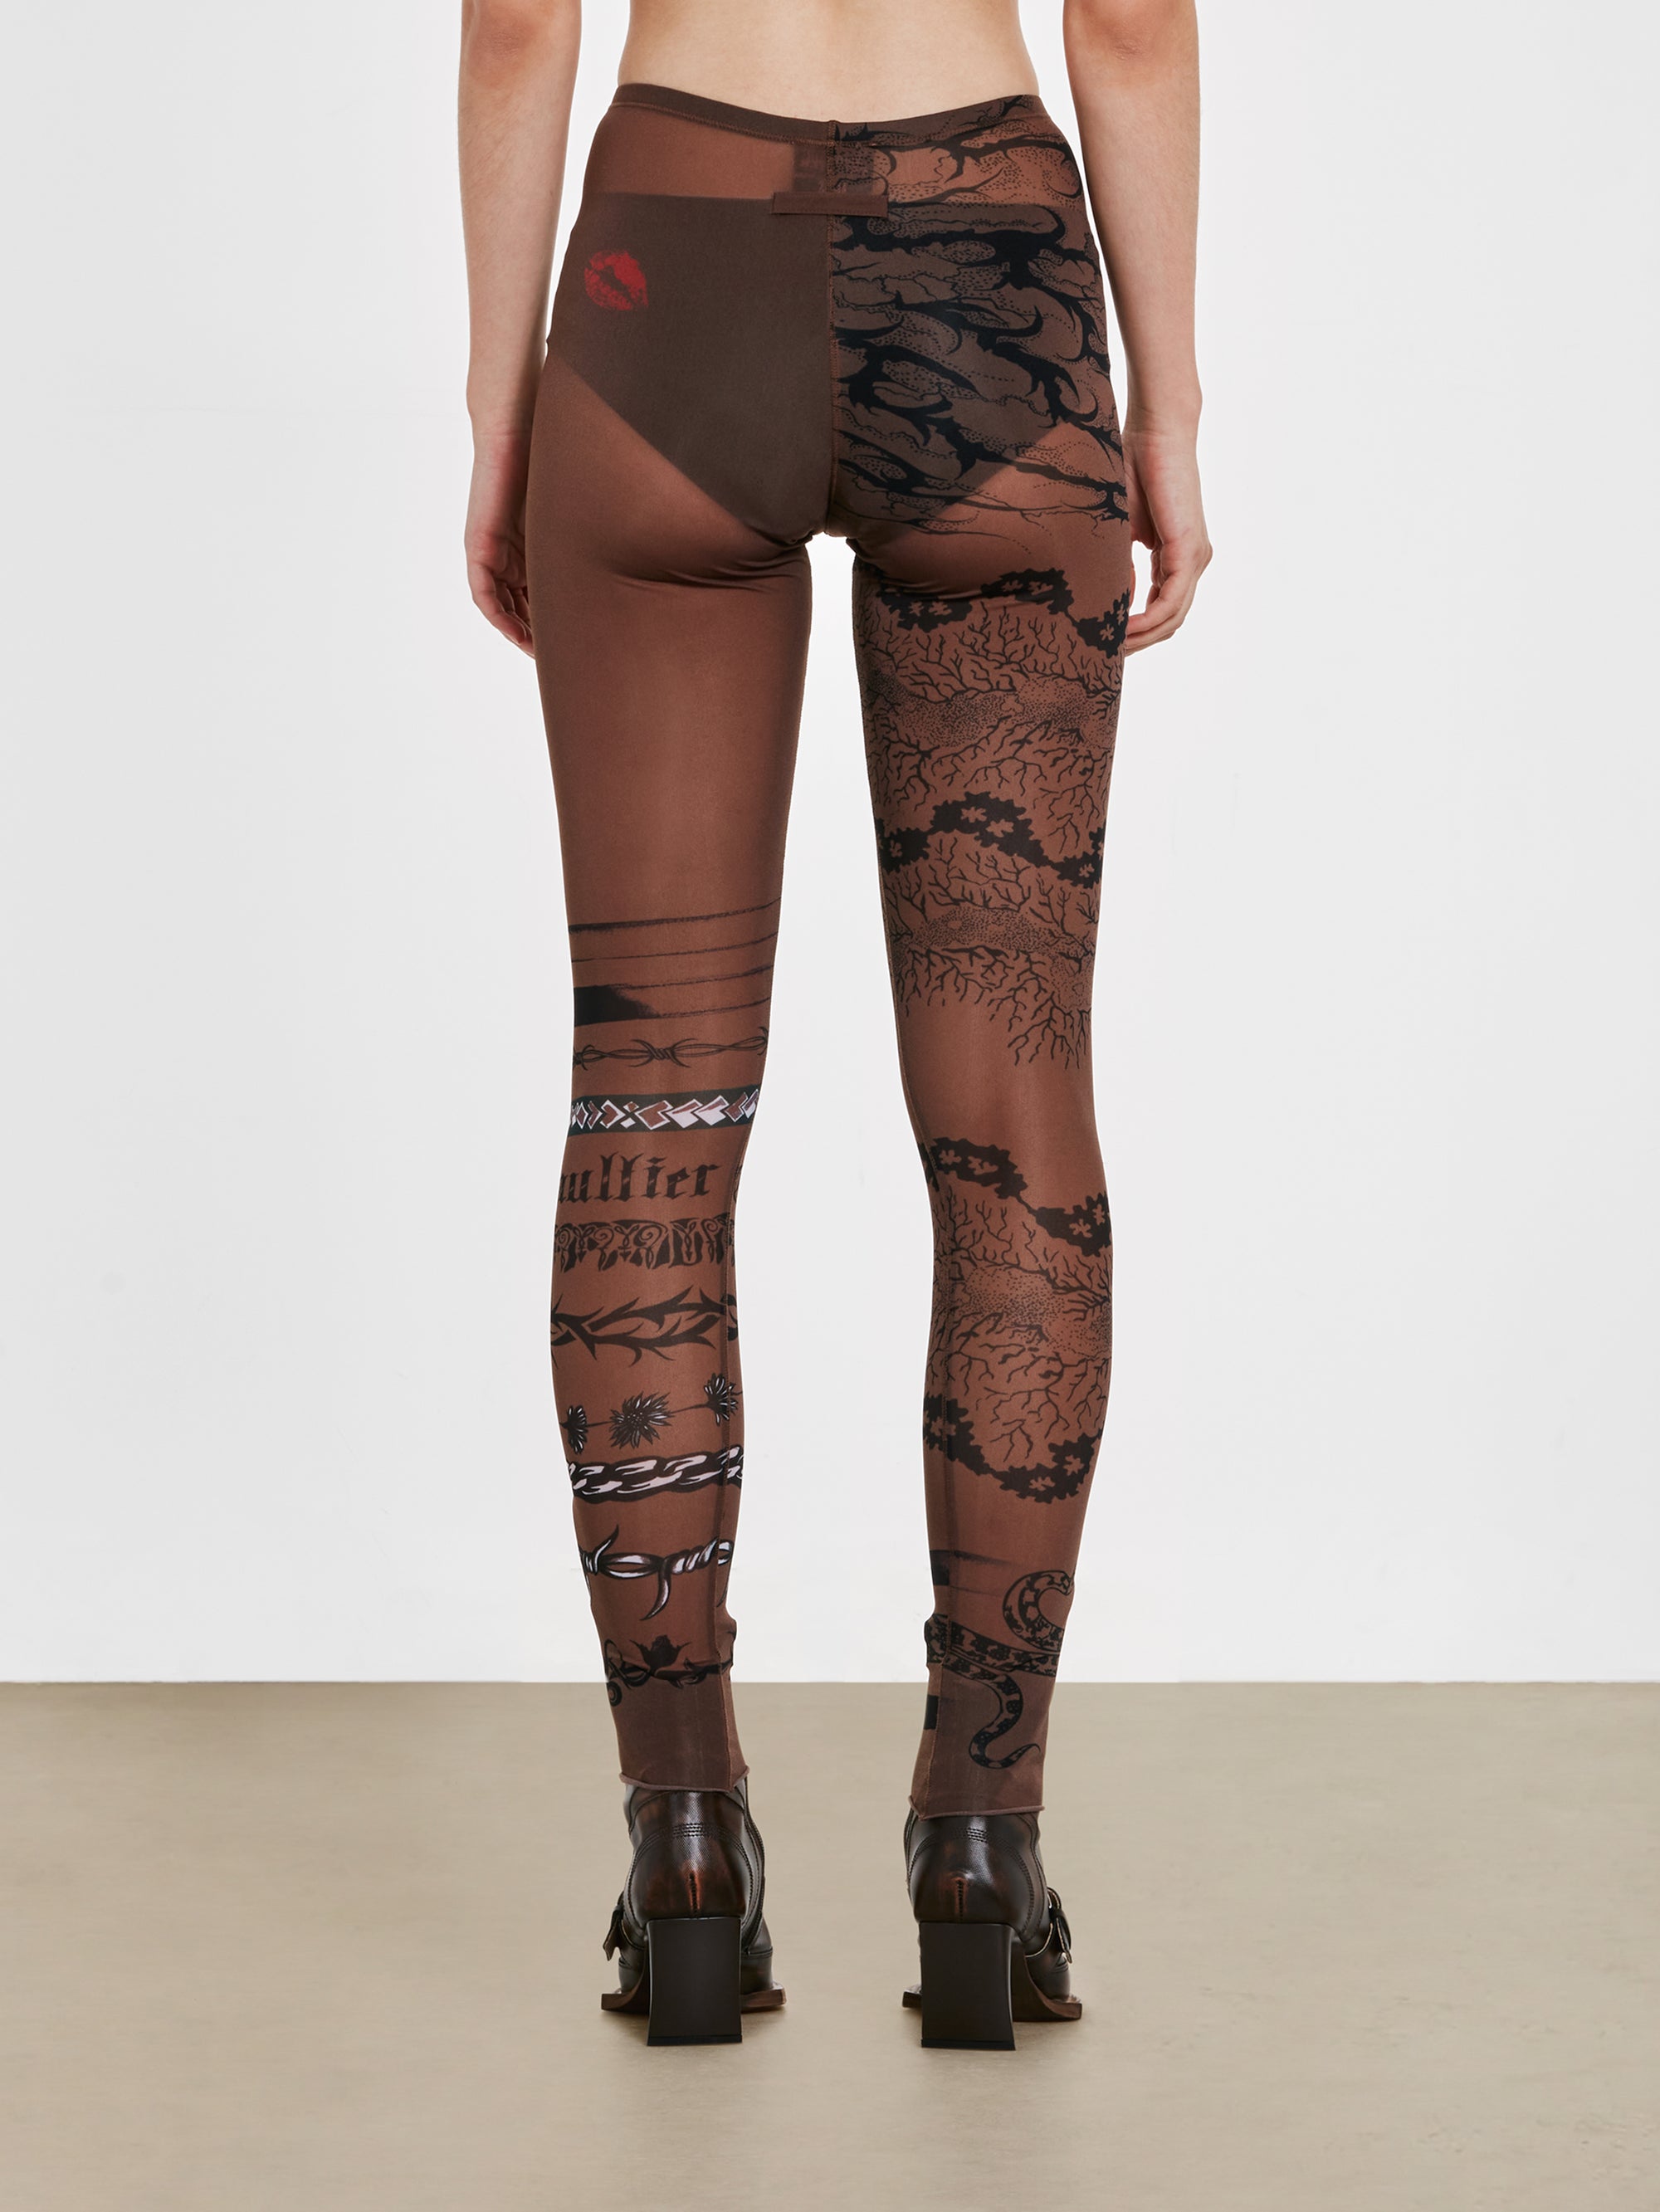 Jean Paul Gaultier - KNWLS Women's Trompe L'Oeil Tattoo Print Leggings –  DSMNY E-SHOP